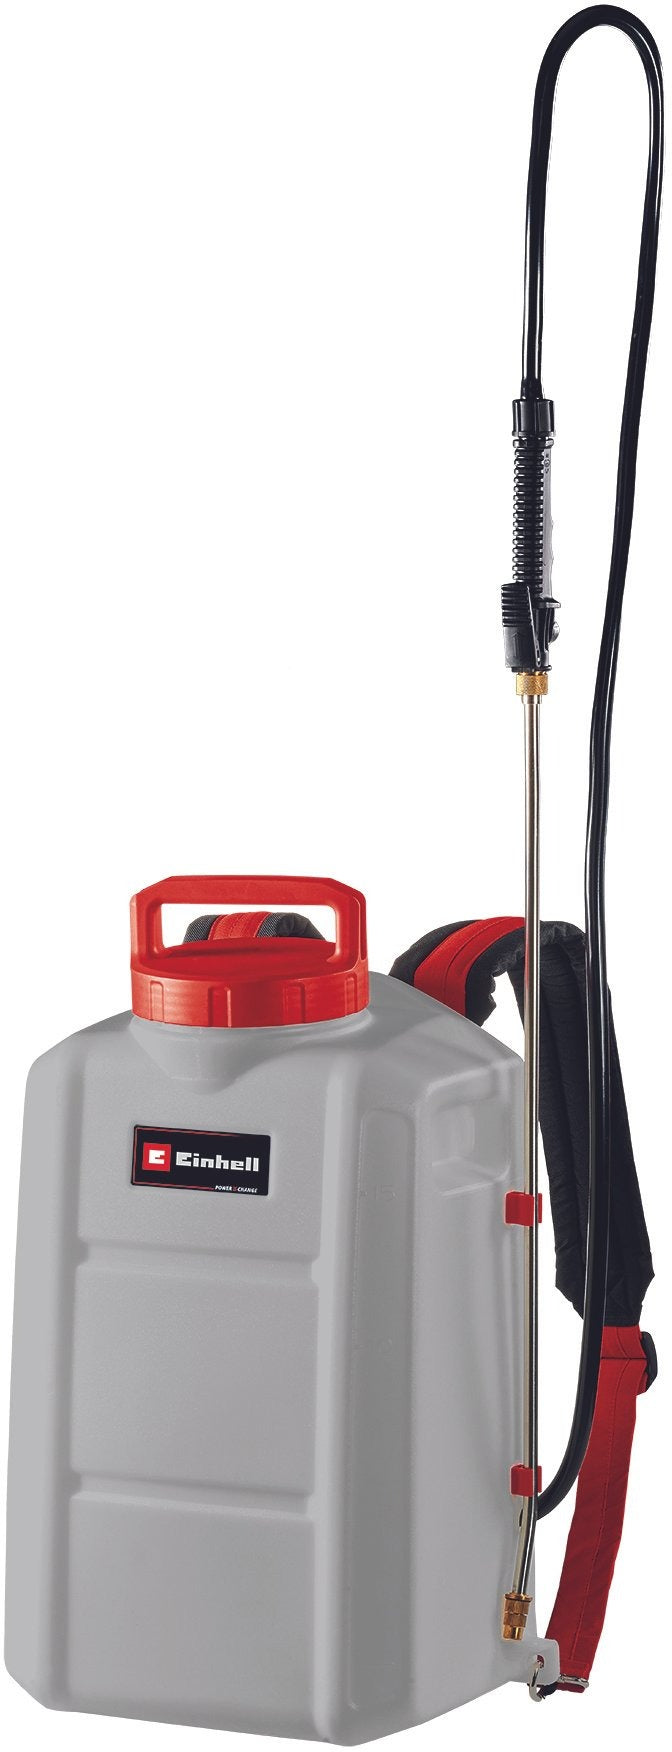 Cordless pressure sprayer Einhell GE-WS 18/150 Li-Solo